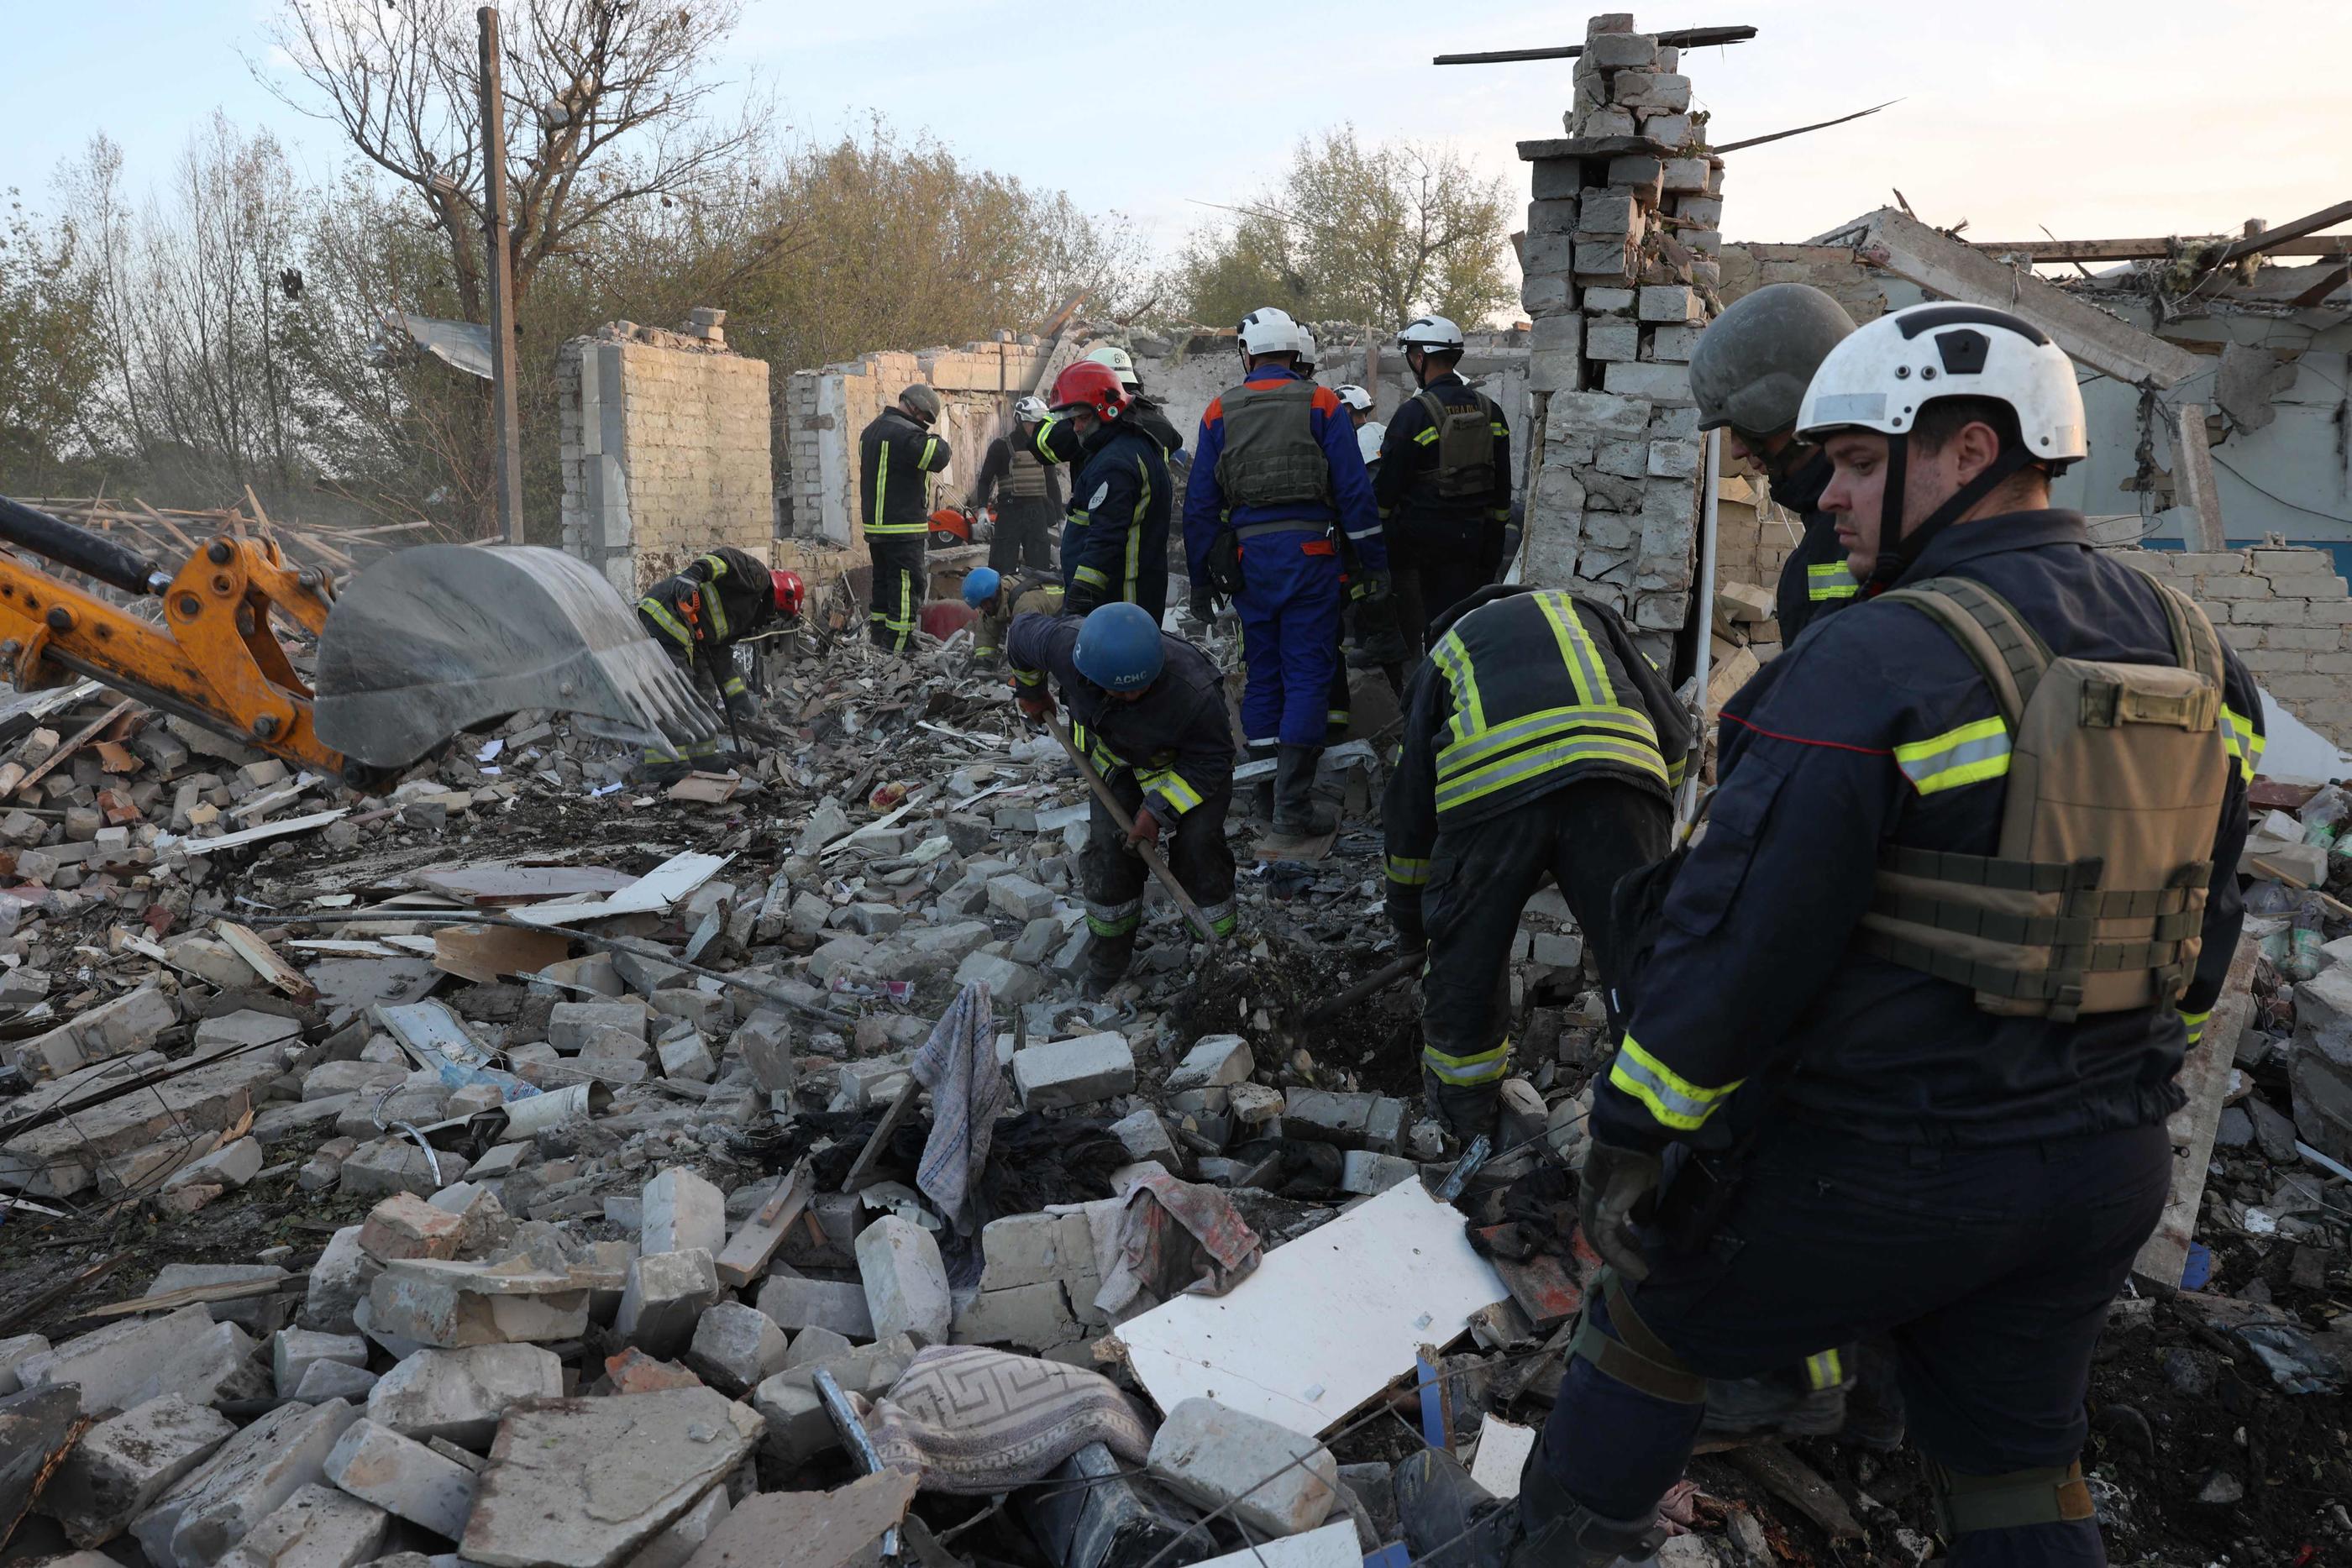 Deux commerces dans lesquels s'étaient réunis une soixantaine de personnes ont été détruits par un bombardement dans le village de Groza, à 30 km de Koupiansk dans l'est de l'Ukraine. AFP/Anatolii STEPANOV